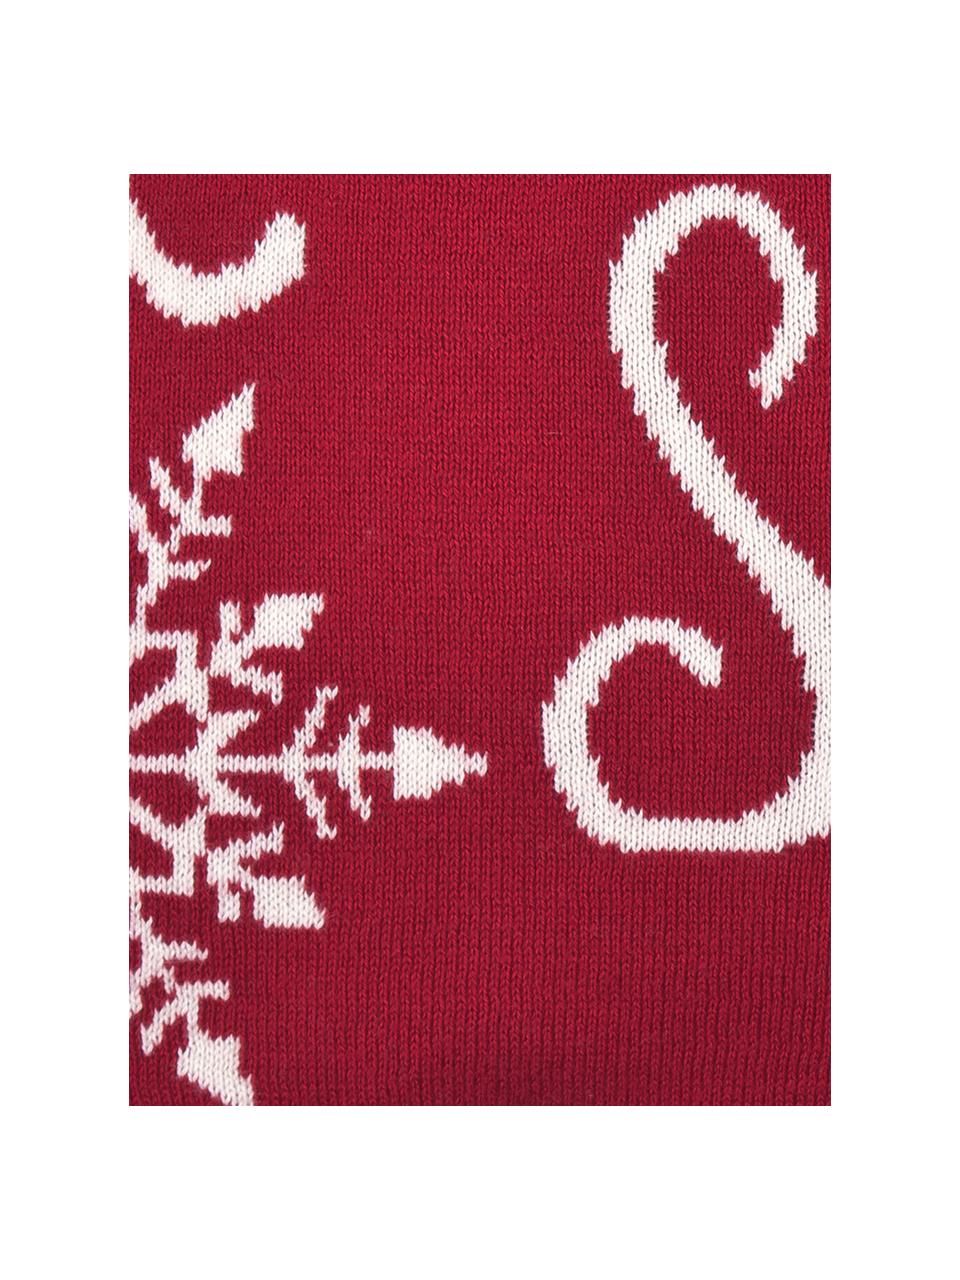 Strick-Kissenhülle Let it Snow in Rot/Weiß mit Schriftzug, Baumwolle, Rot, Cremeweiß, B 40 x L 40 cm